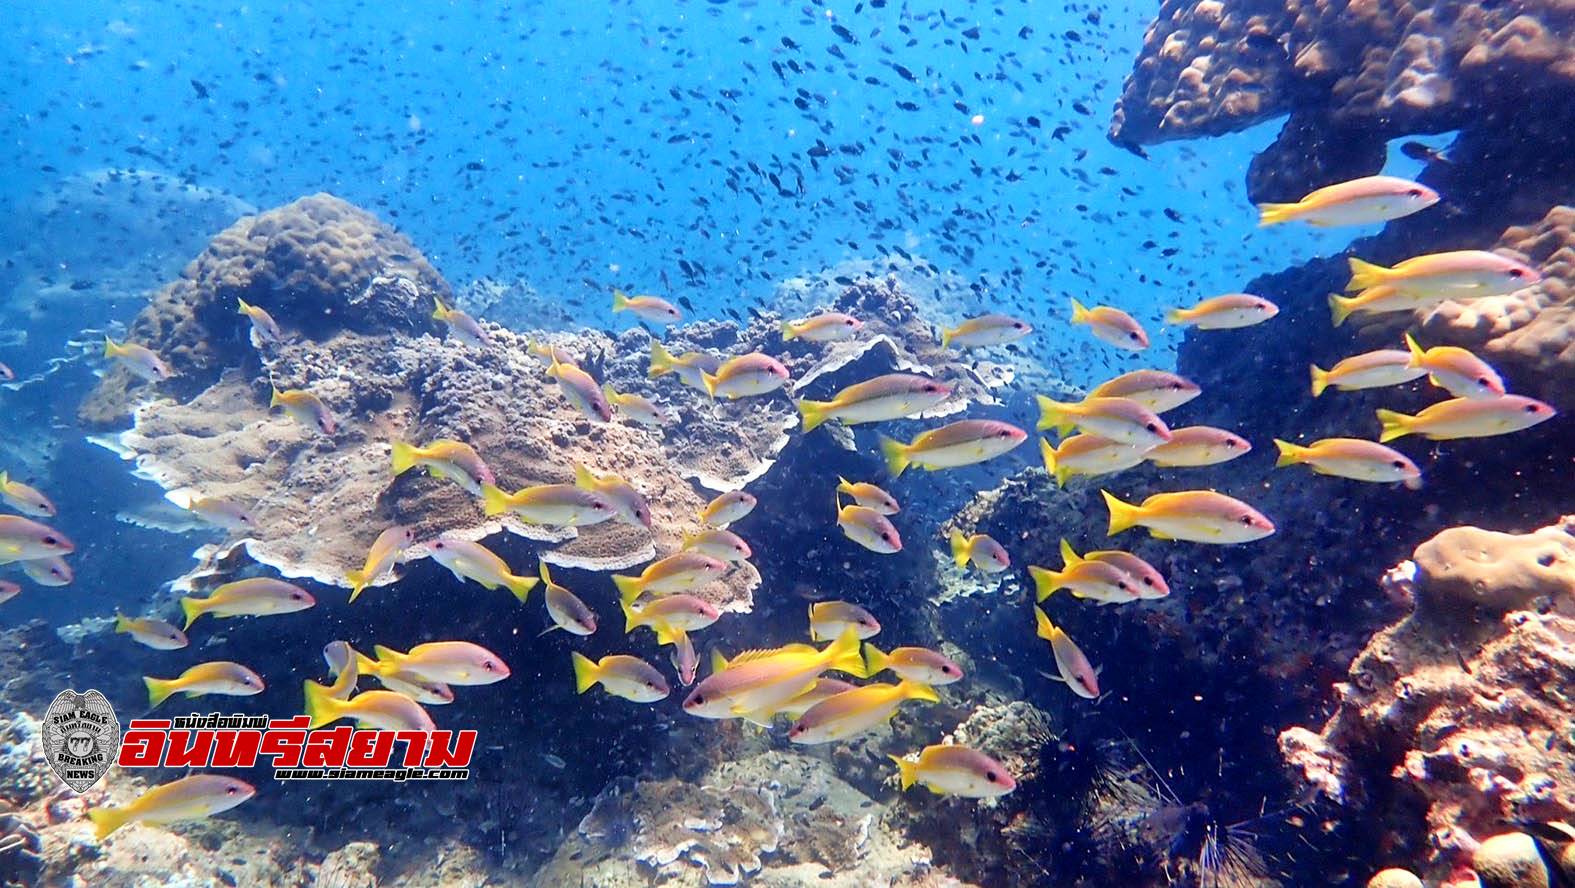 ประจวบคีรีขันธ์-อช.หาดวนกร ติดตั้งทุ่นดักขยะและเก็บซากอวนประมงป้องกันแนวปะการัง